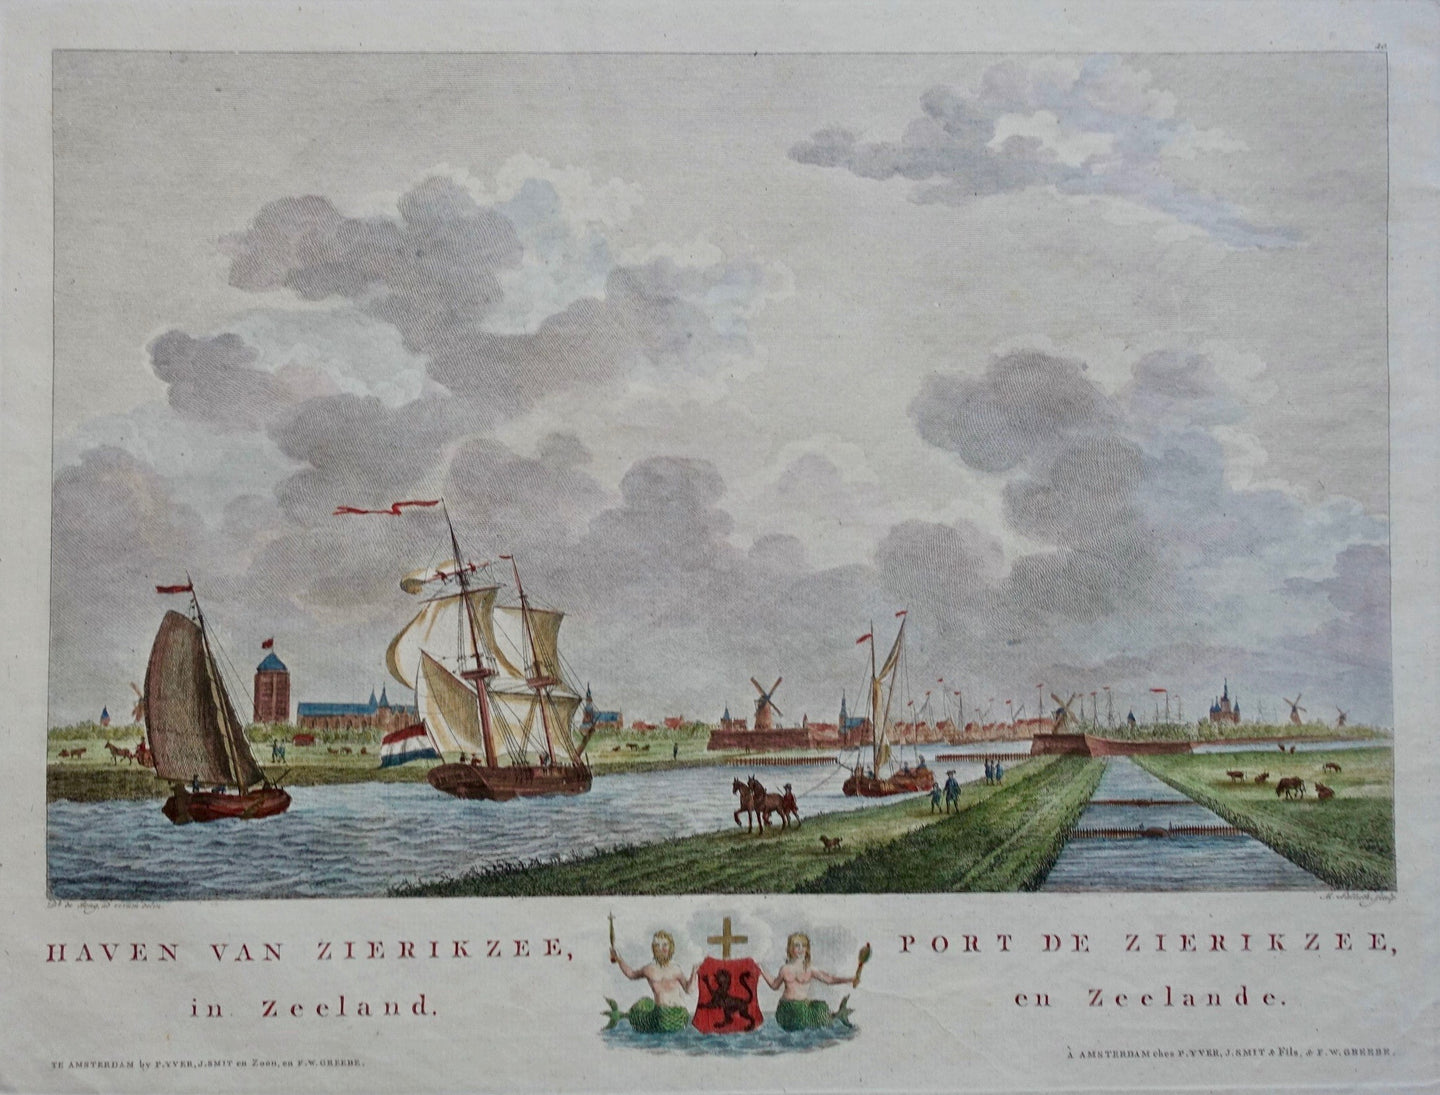 Zierikzee - D de Jong / M Sallieth - 1802